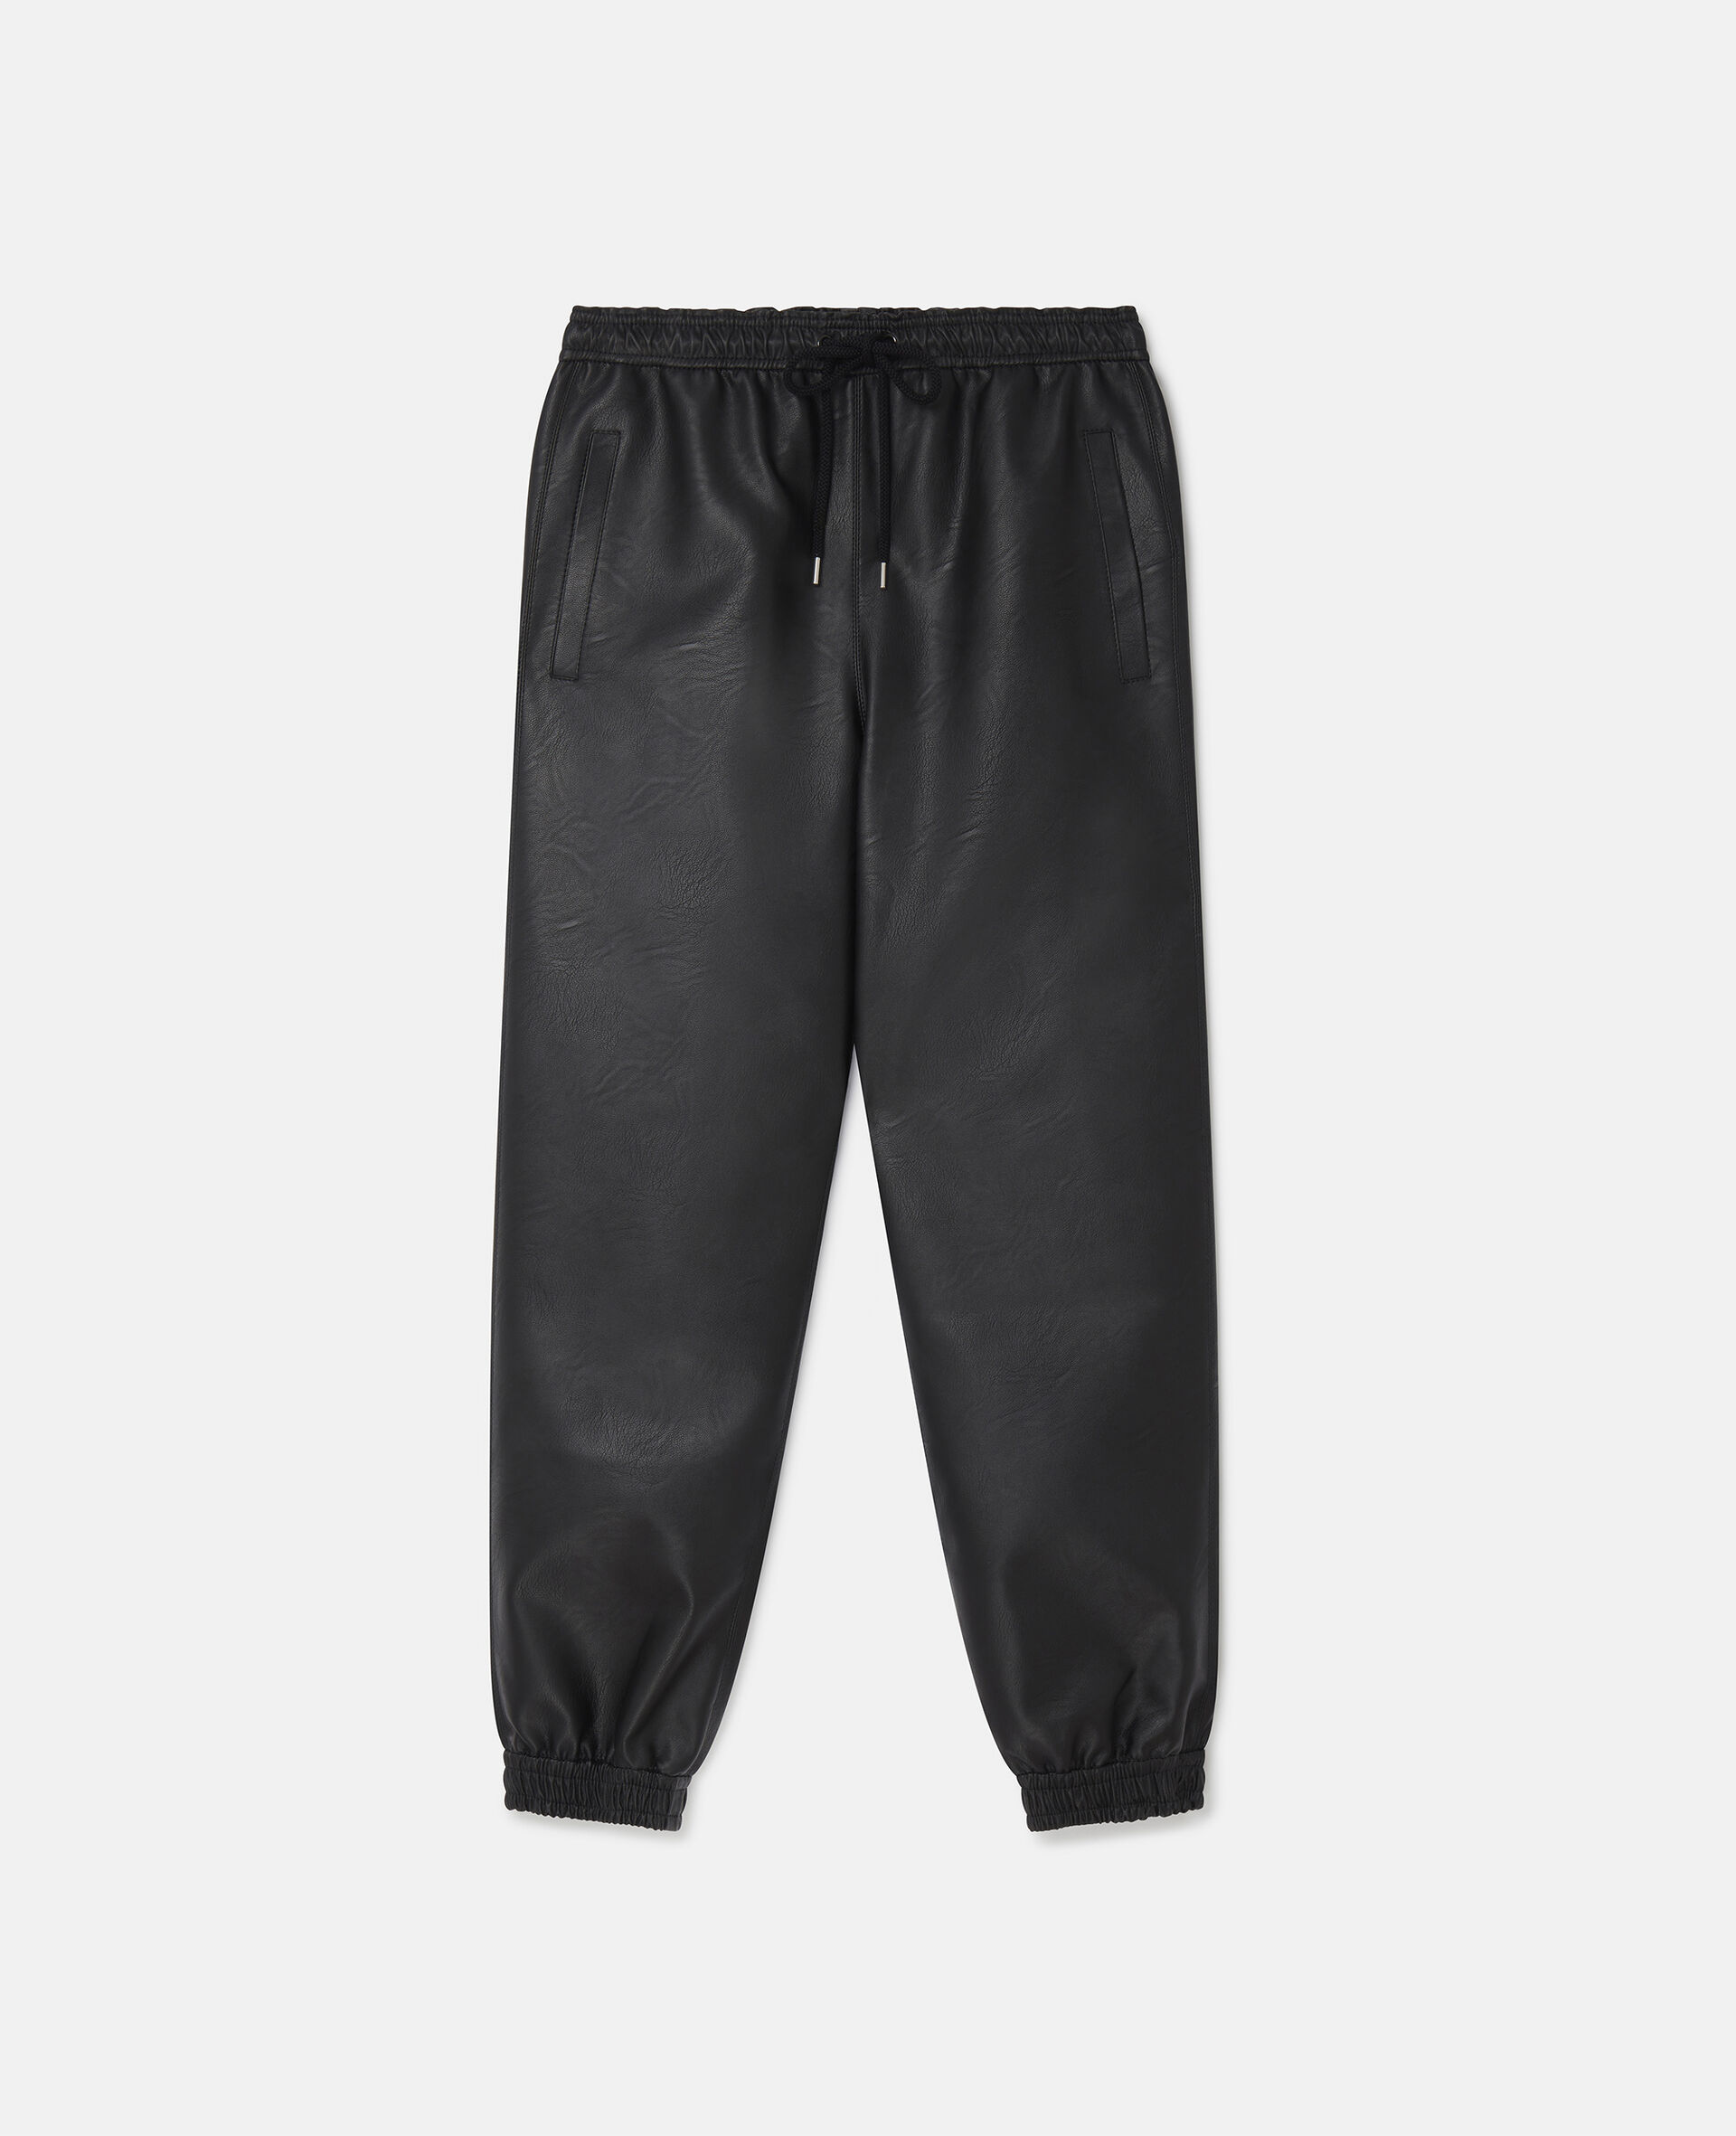 Alter Mat长裤-黑色-medium